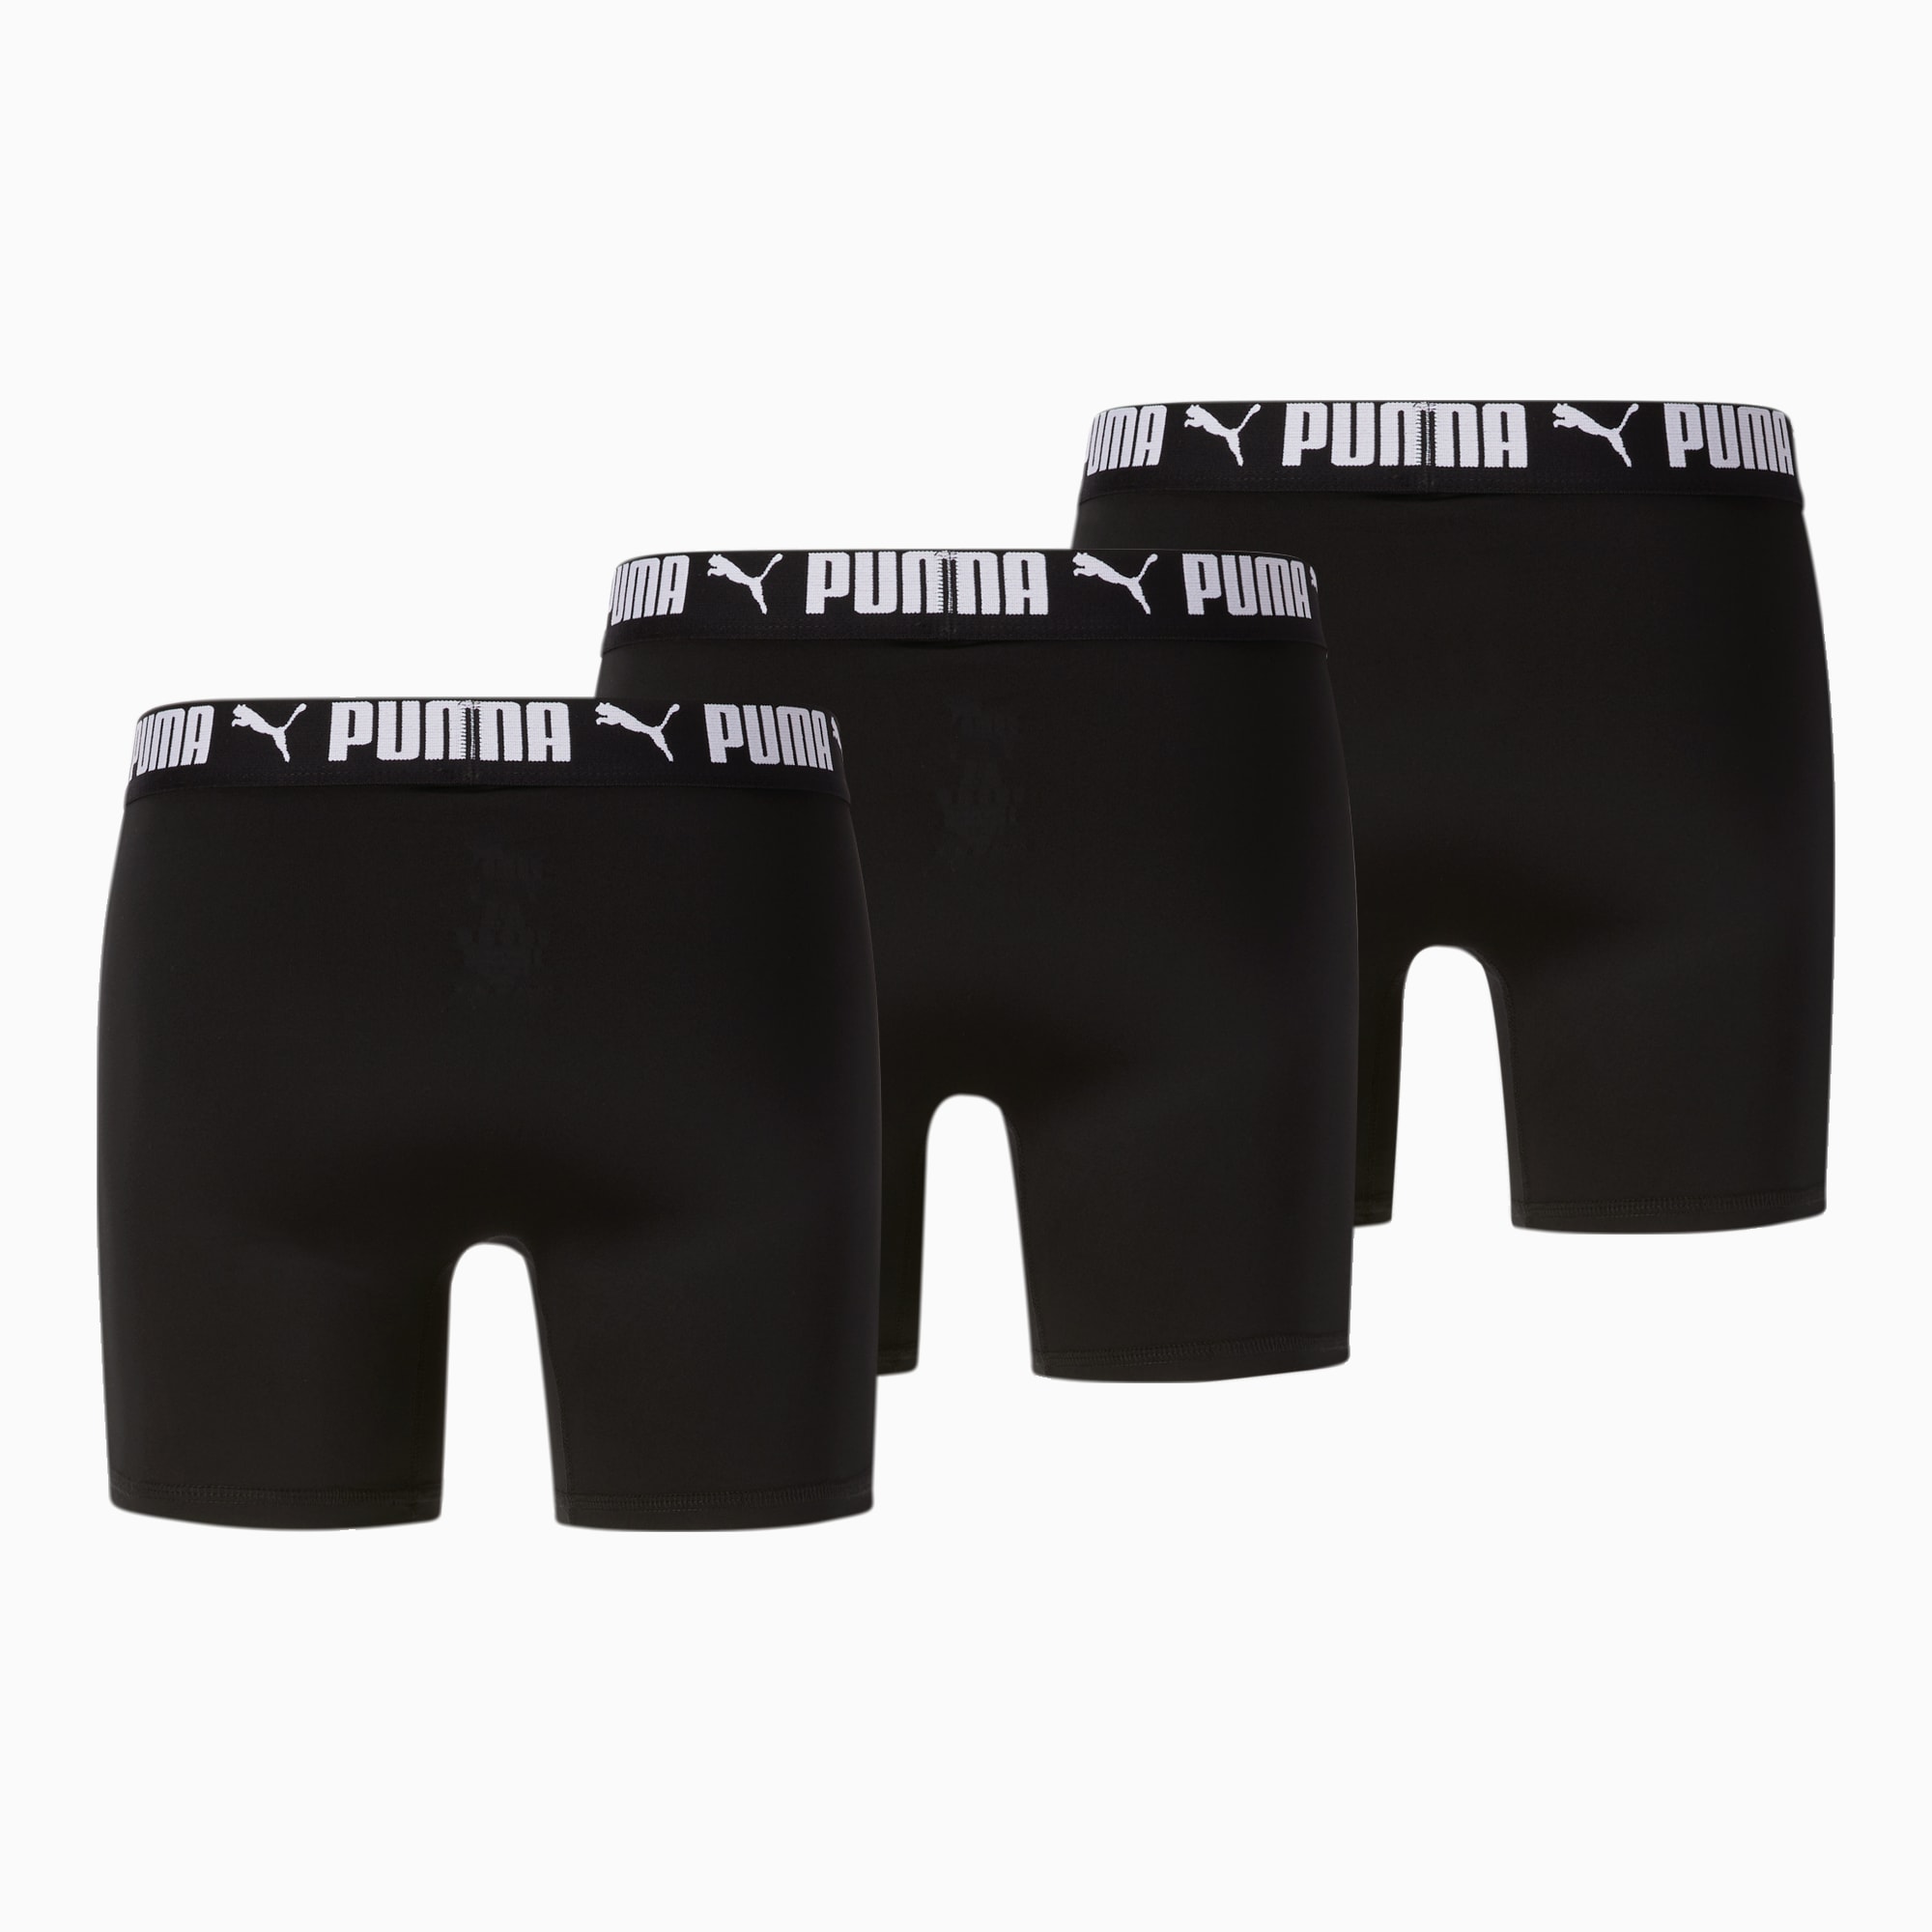 Trainer's Got Balls - Black Boxer Brief Underwear